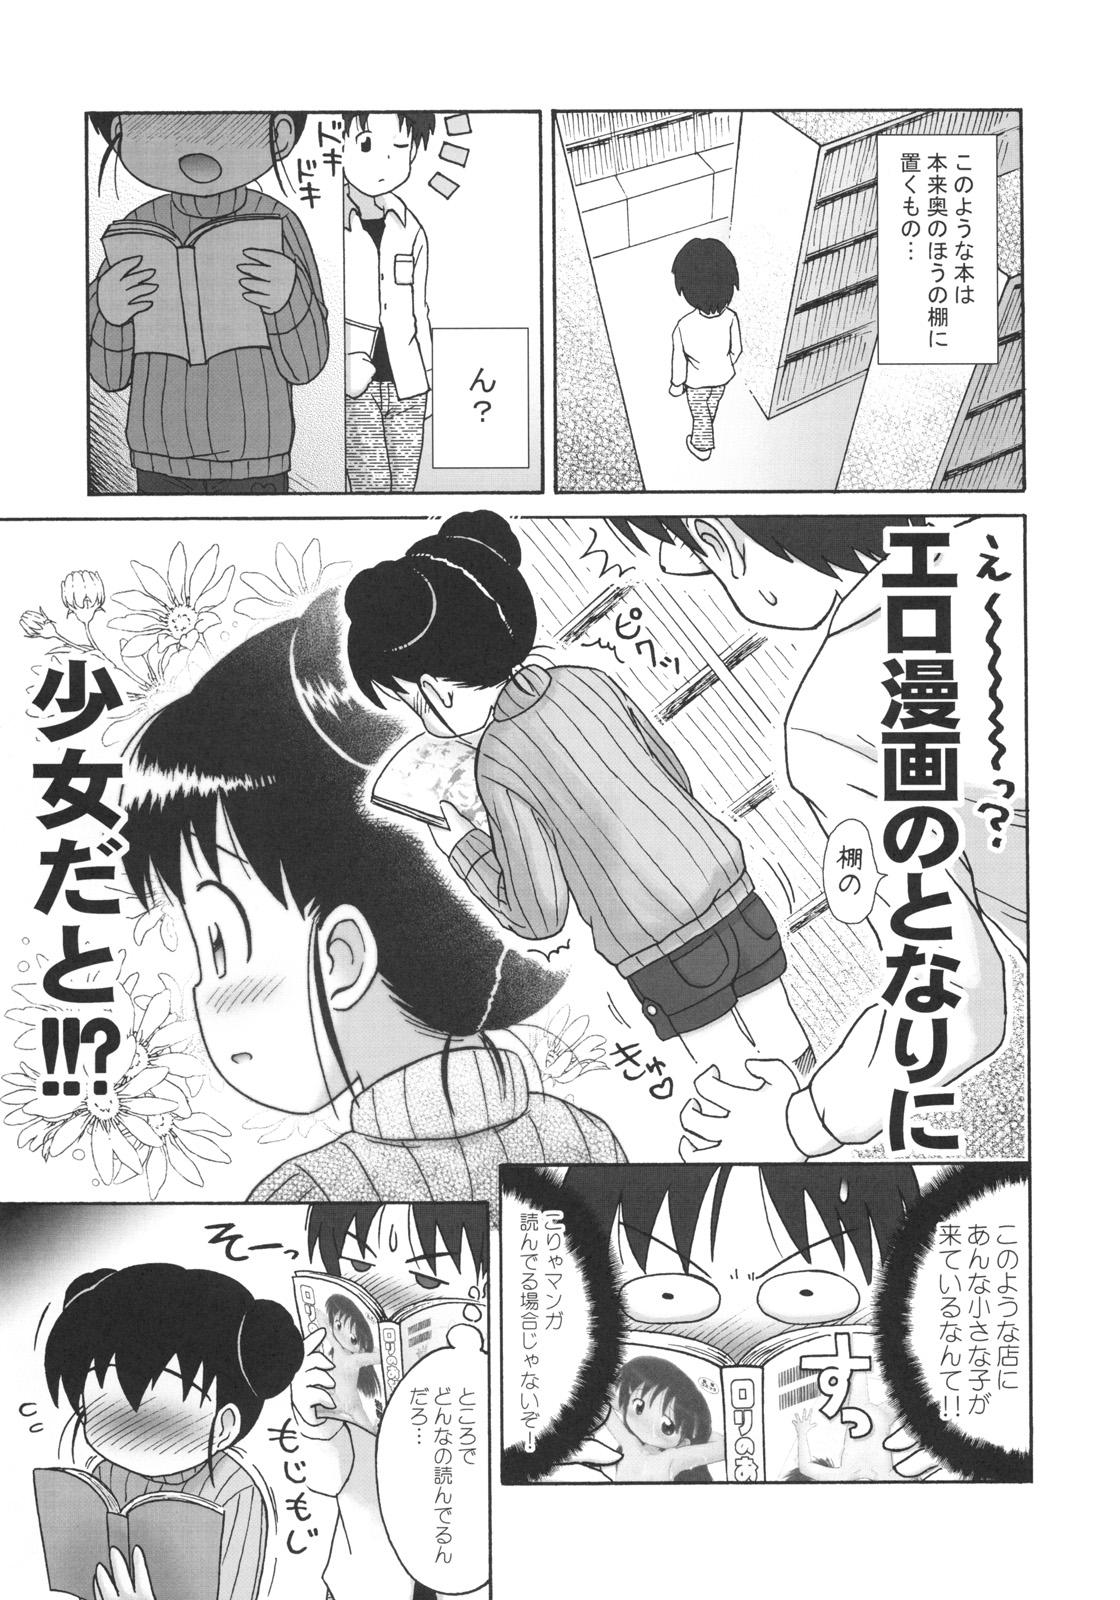 Weird Doki Doki Tachiyomi Onii-chan Ass Lick - Page 6